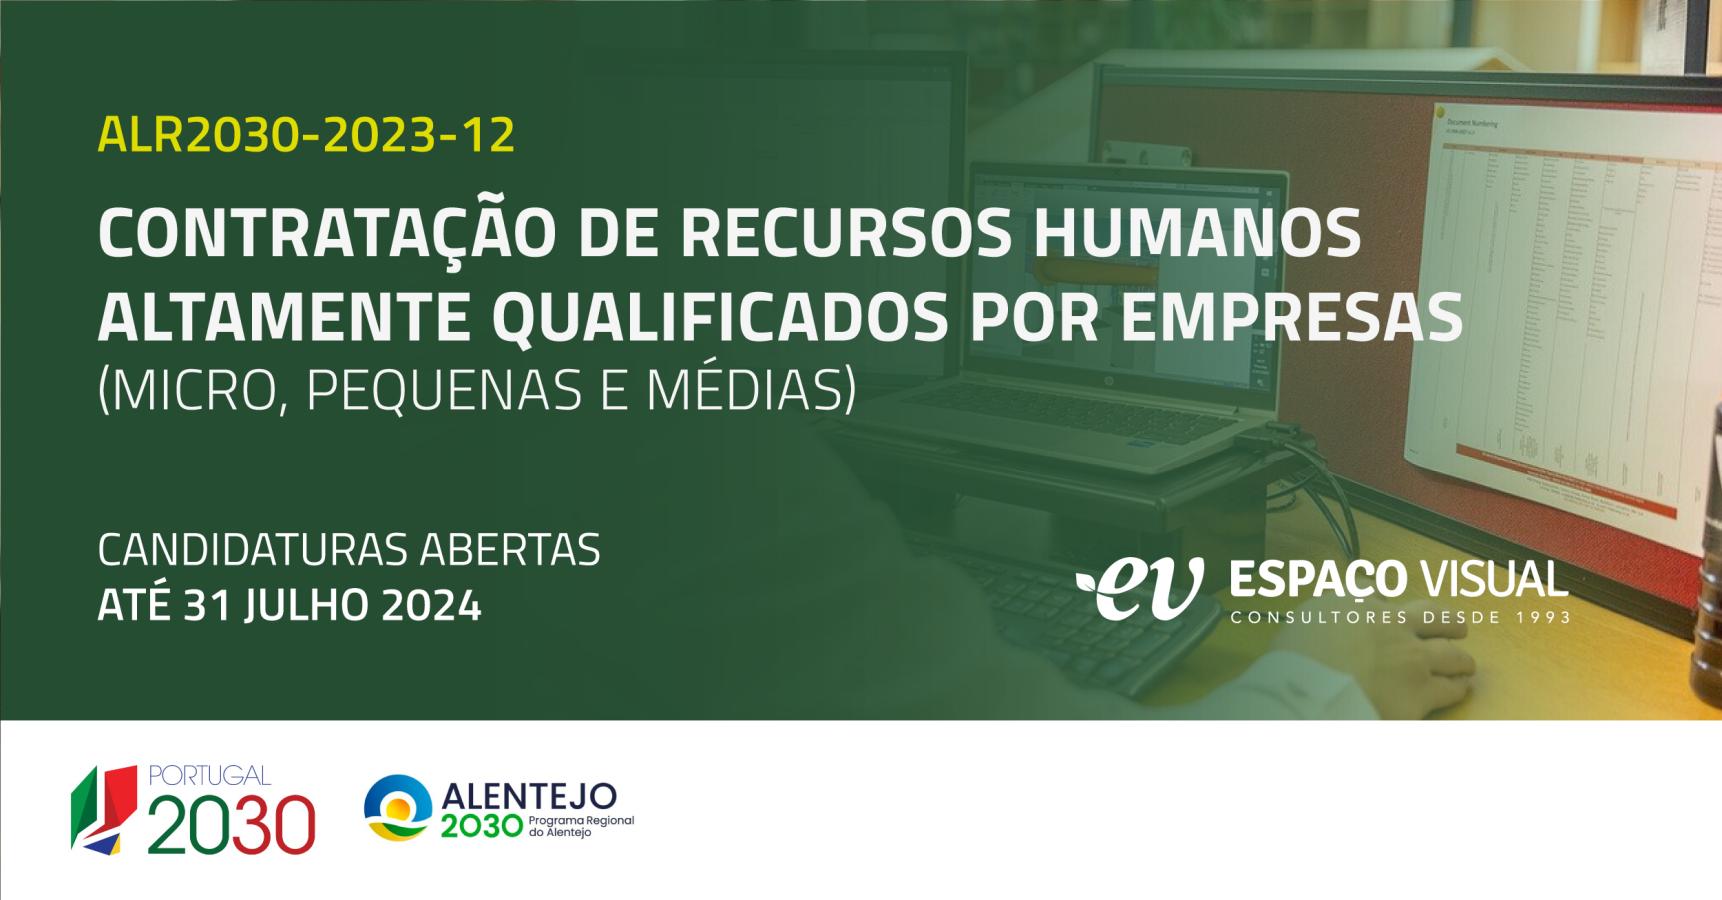 Contratação de Recursos Humanos Altamente Qualificados por empresas (micro, pequenas e médias) | ALR2030-2023-11